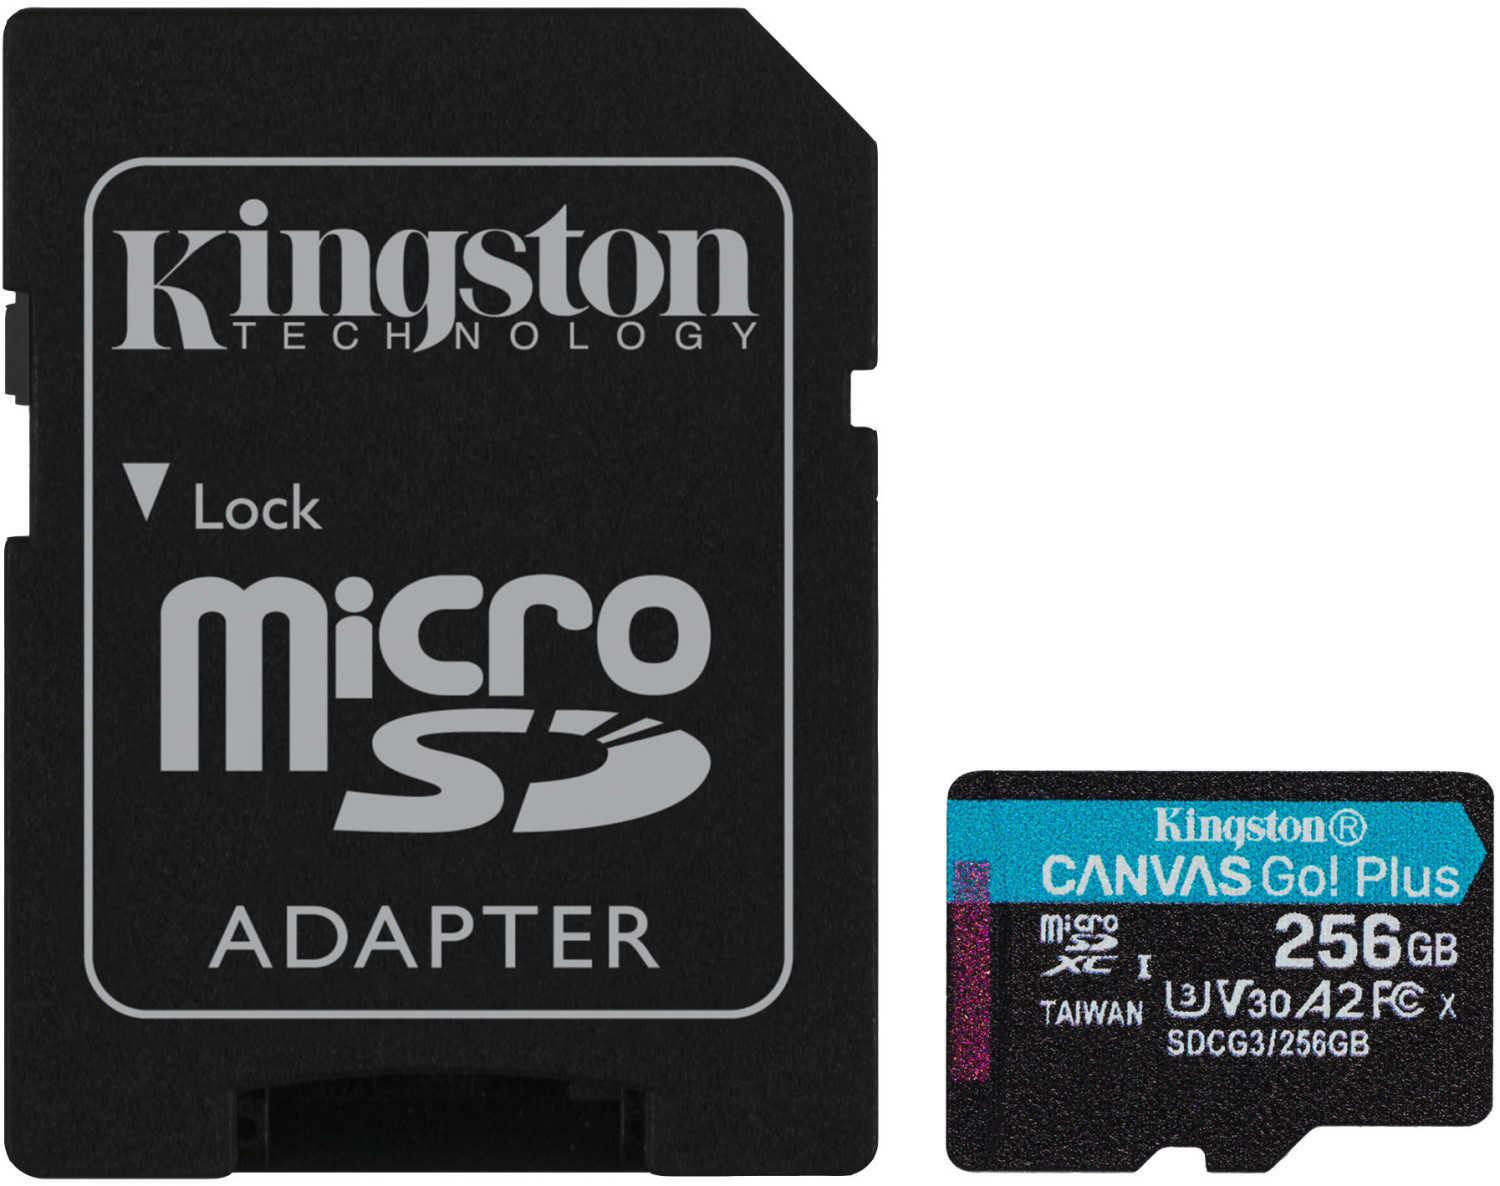 Kingston Canvas Go! Plus microSDXC